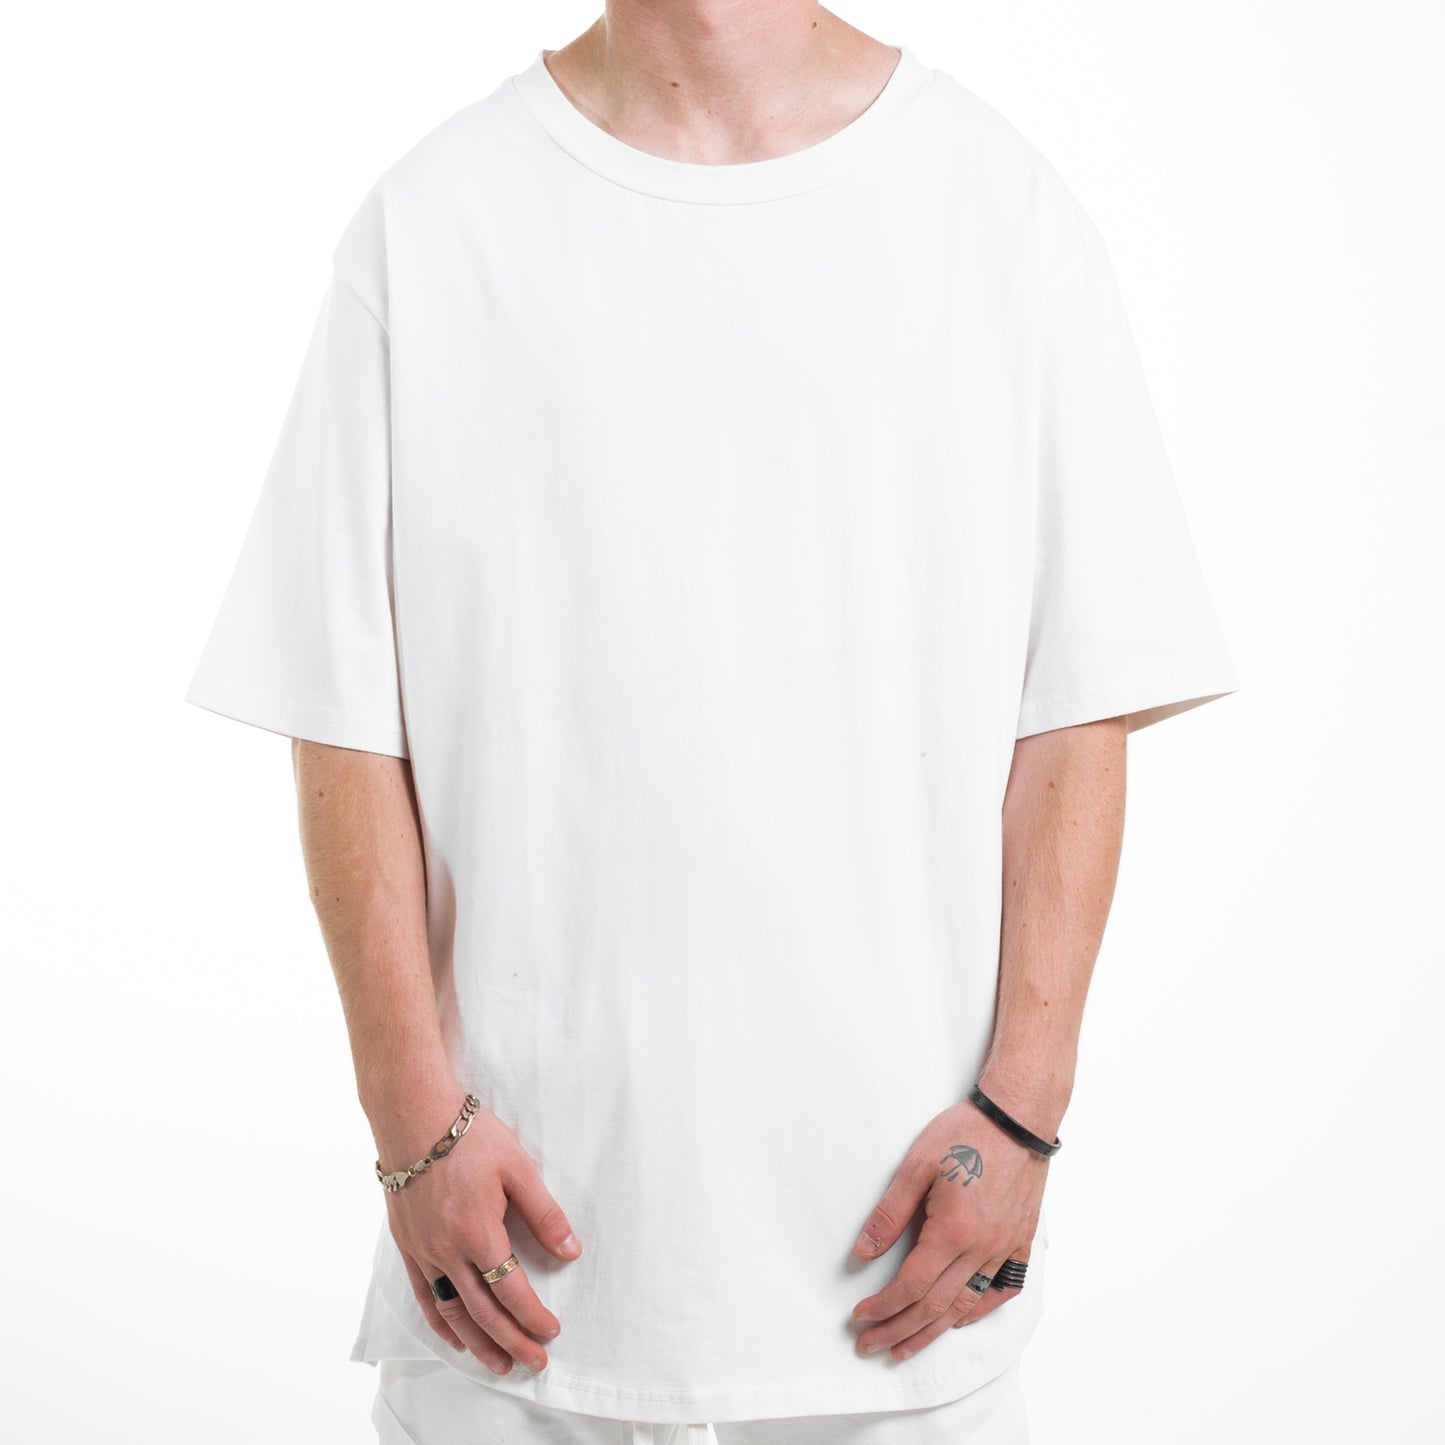 Camiseta festoneada: blanca